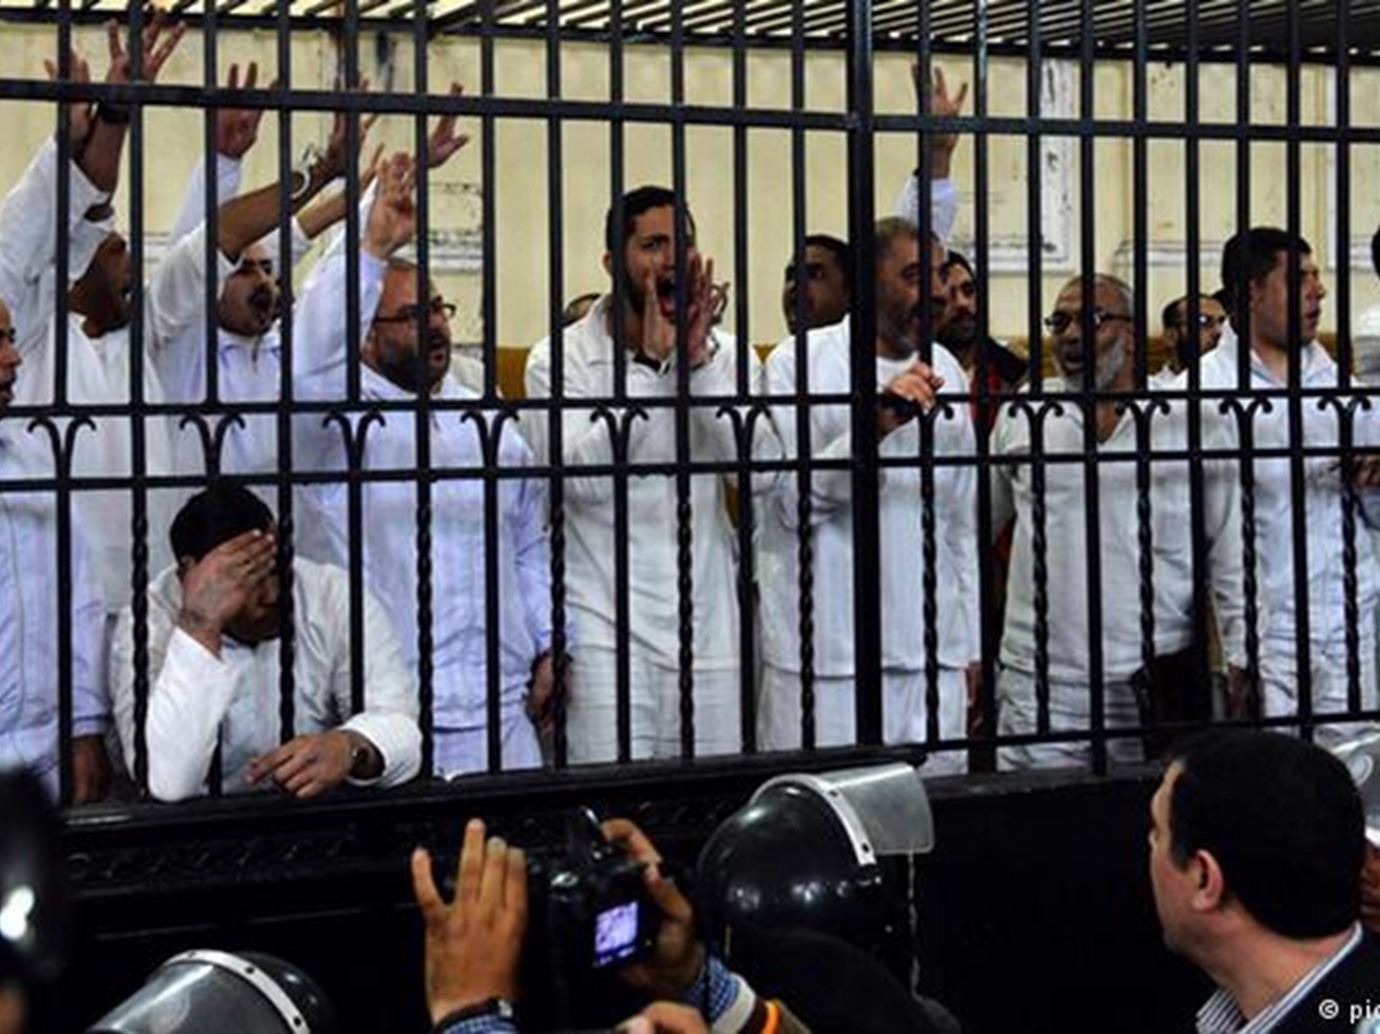 منظمة تطالب مصر بإلغاء أحكام الإعدام الجائرة والمشوبة بالتعذيب